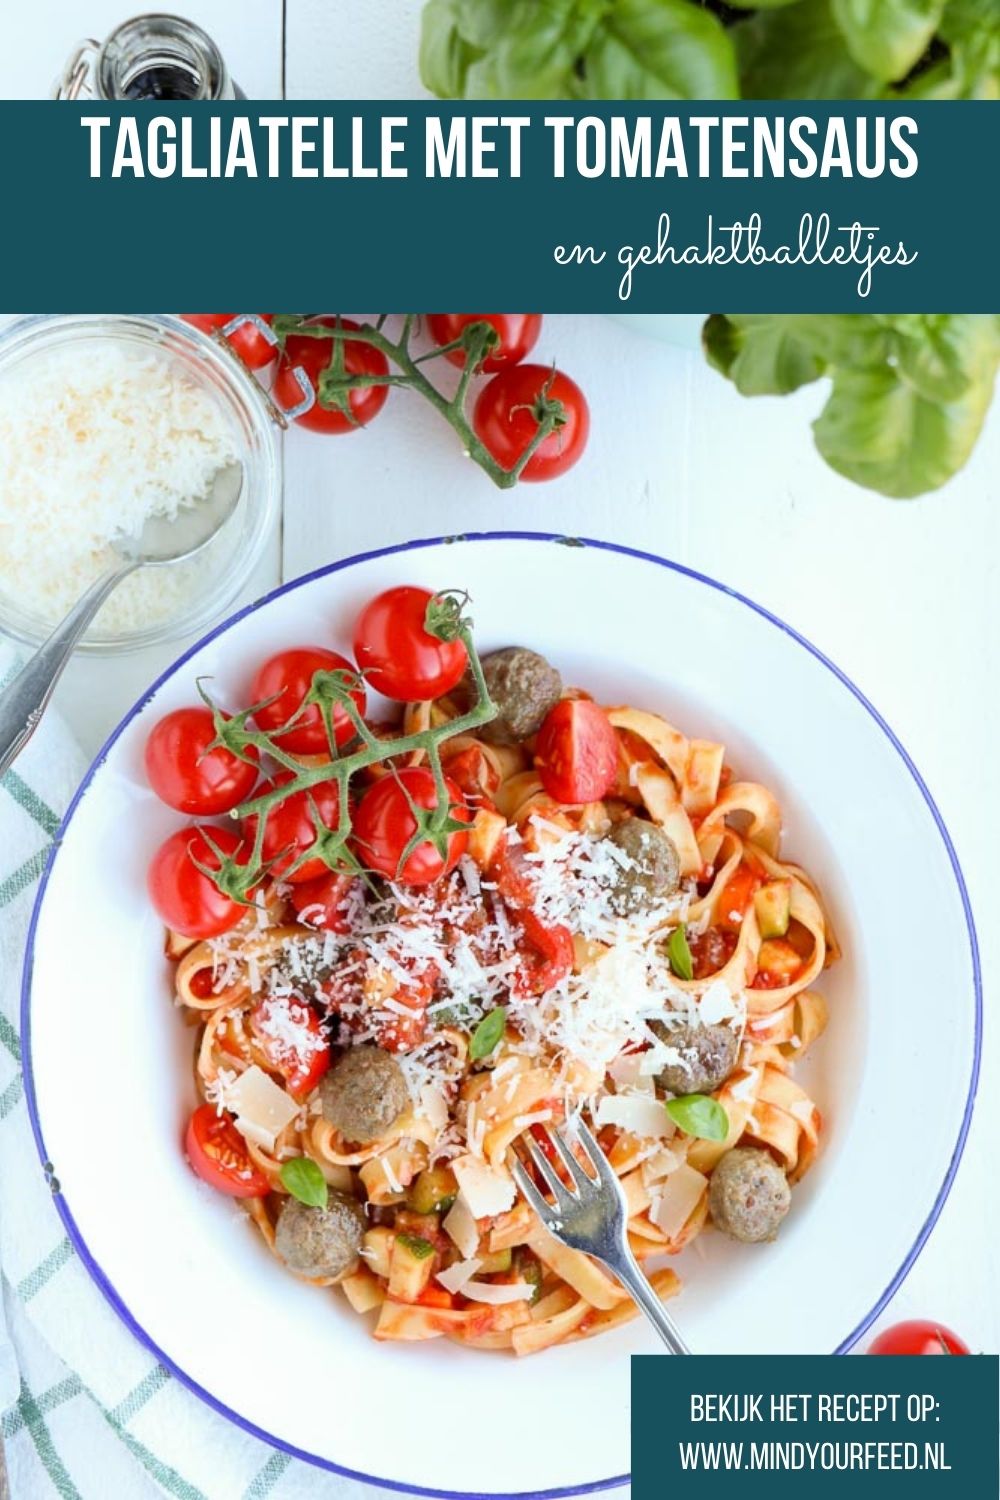 Tagliatelle met tomatensaus en gehakt, makkelijk recept voor pasta met tomatensaus en gehaktballetjes, snel recept, makkelijke pasta maaltijd